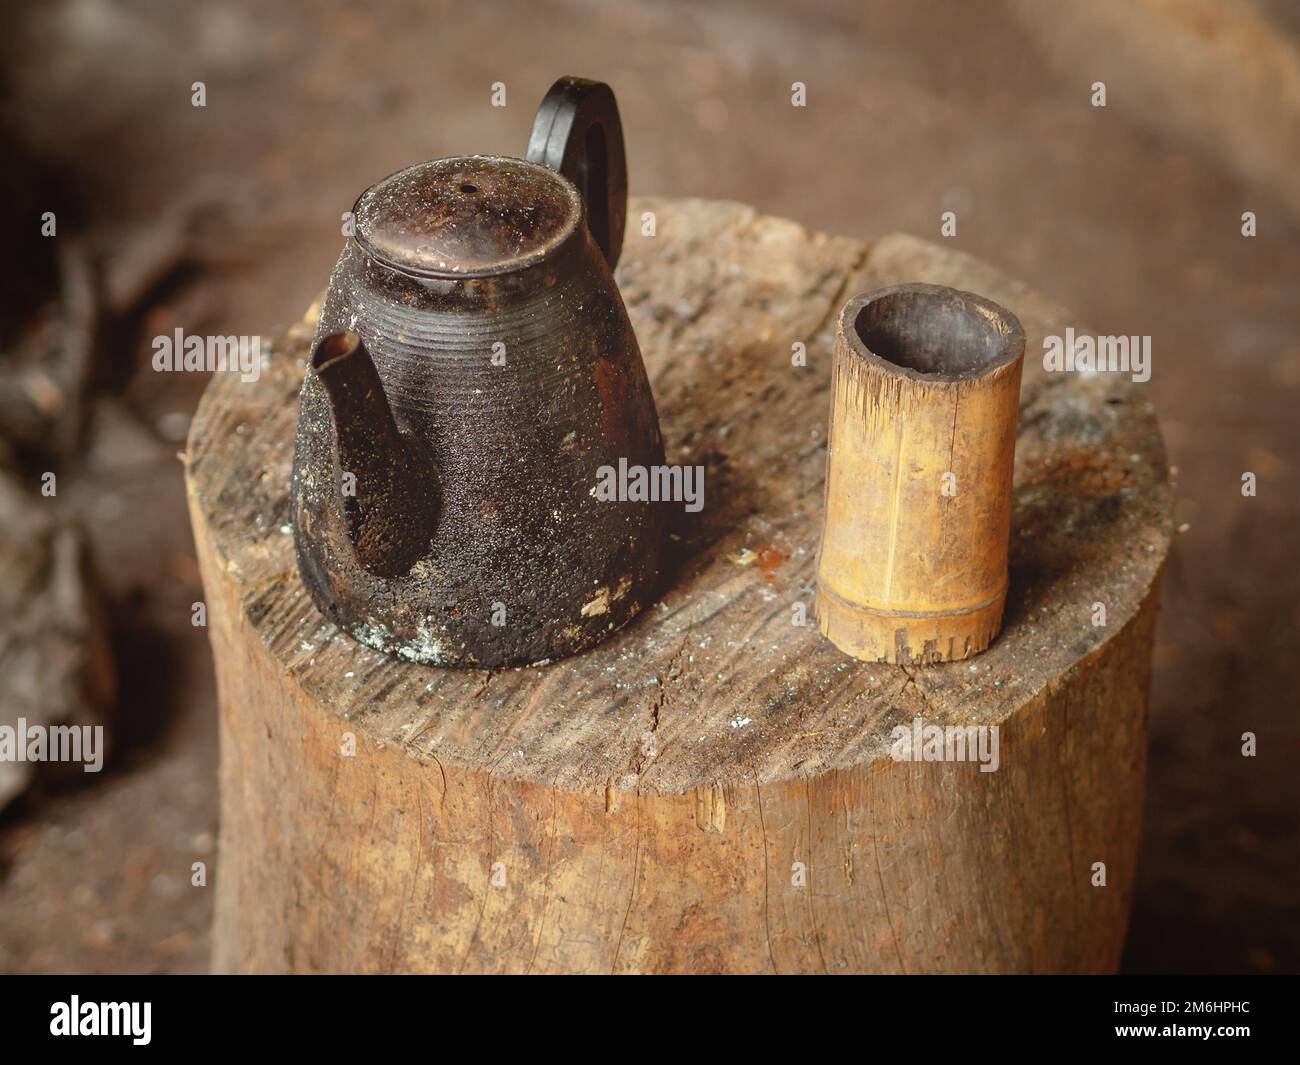 Une vieille bouilloire charrée avec une tasse faite maison sculptée en bois se dresse sur une bûche. Thé buvant dans les conditions de terrain Banque D'Images